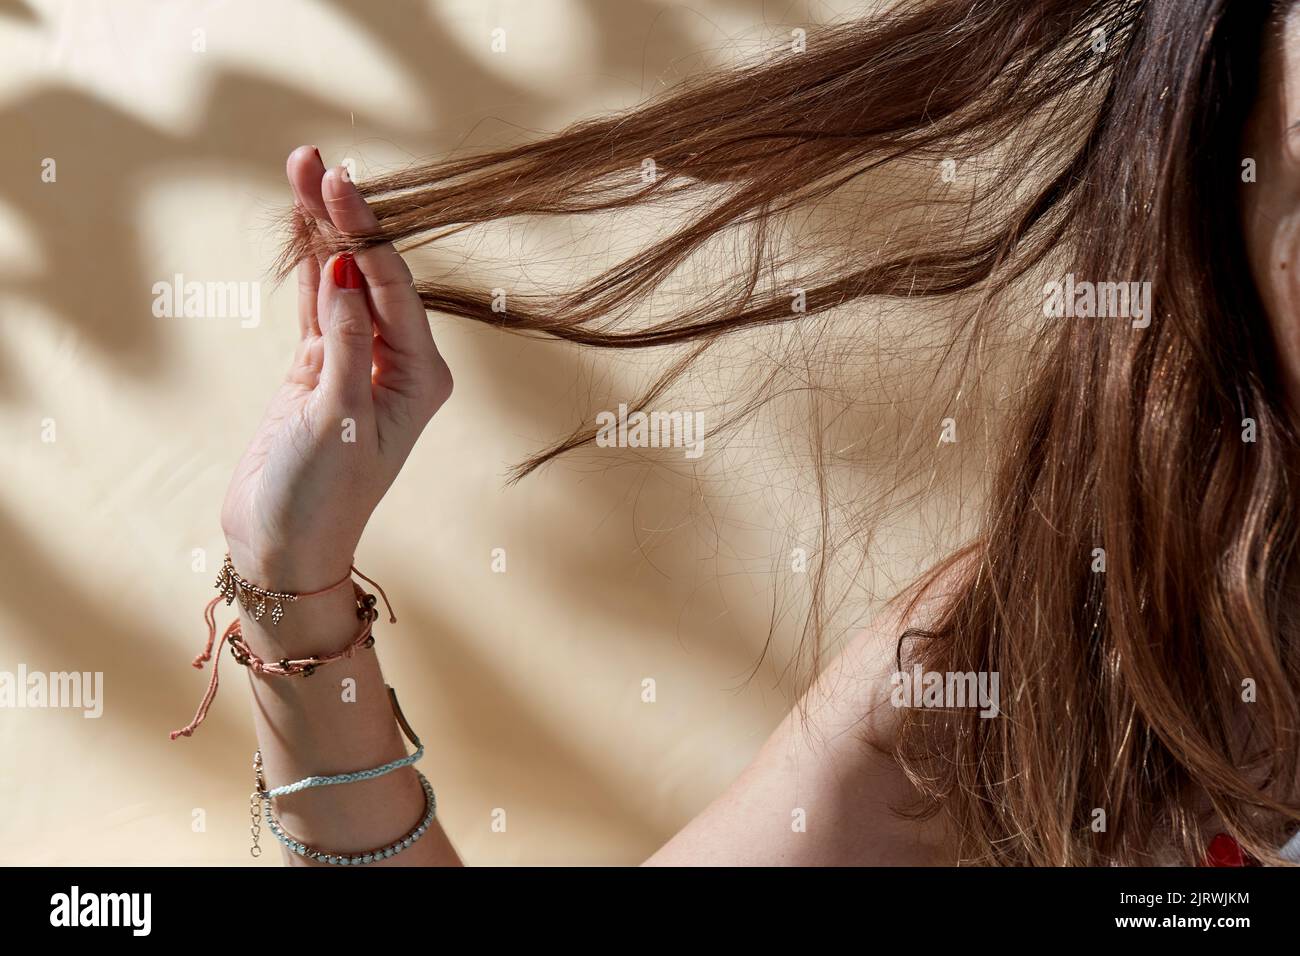 gros plan d'une femme tenant un brin de cheveux Banque D'Images